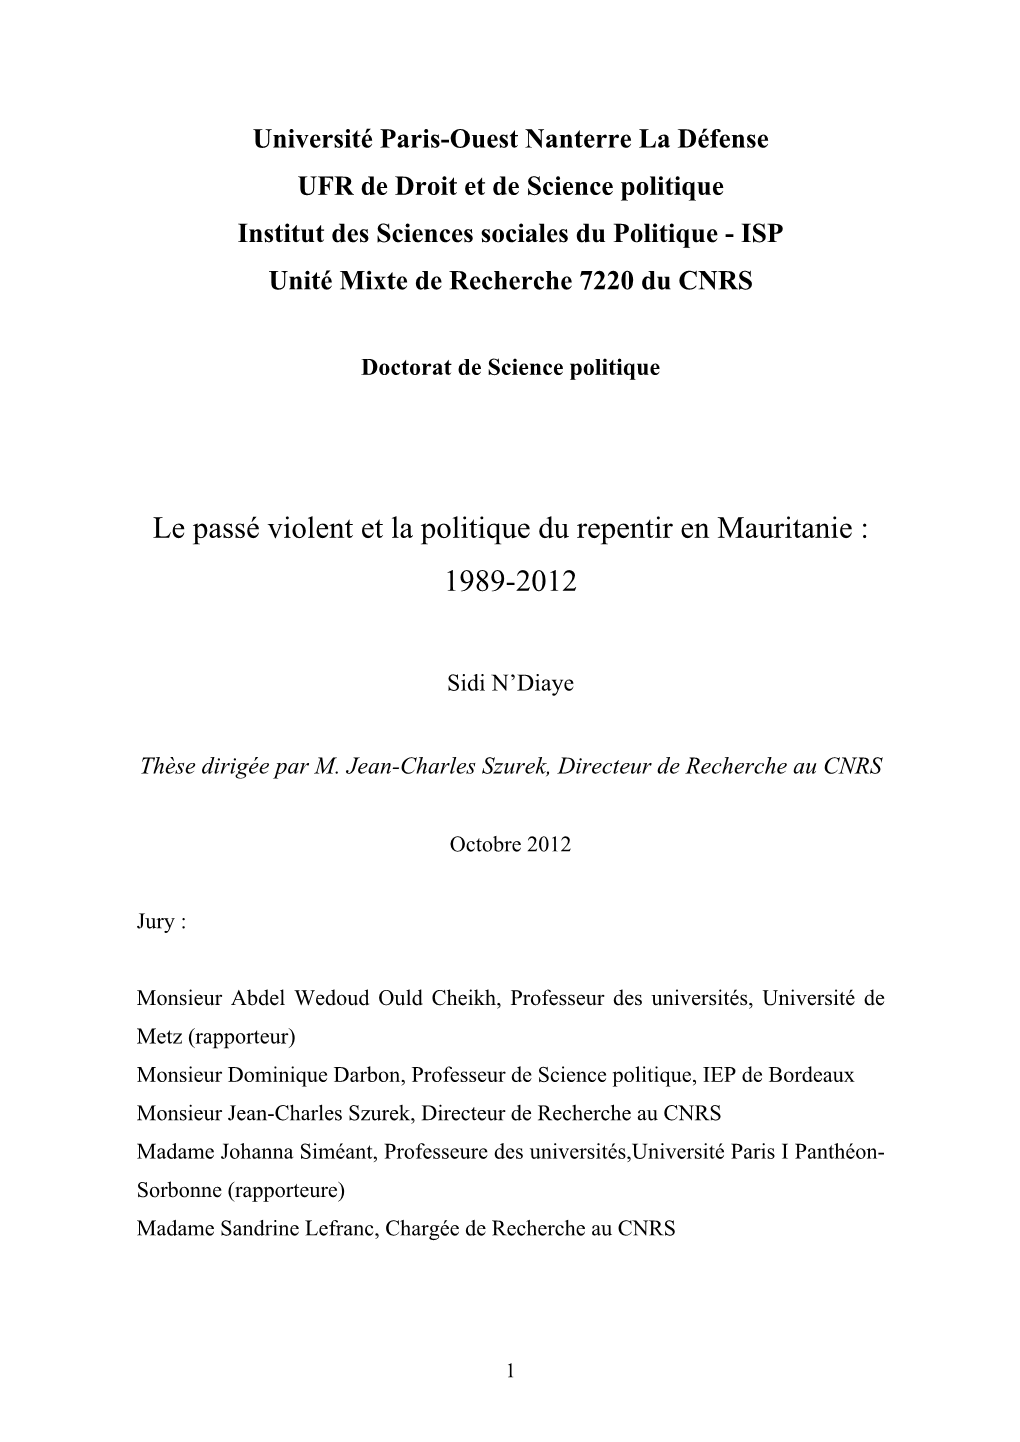 Le Passé Violent Et La Politique Du Repentir En Mauritanie : 1989-2012